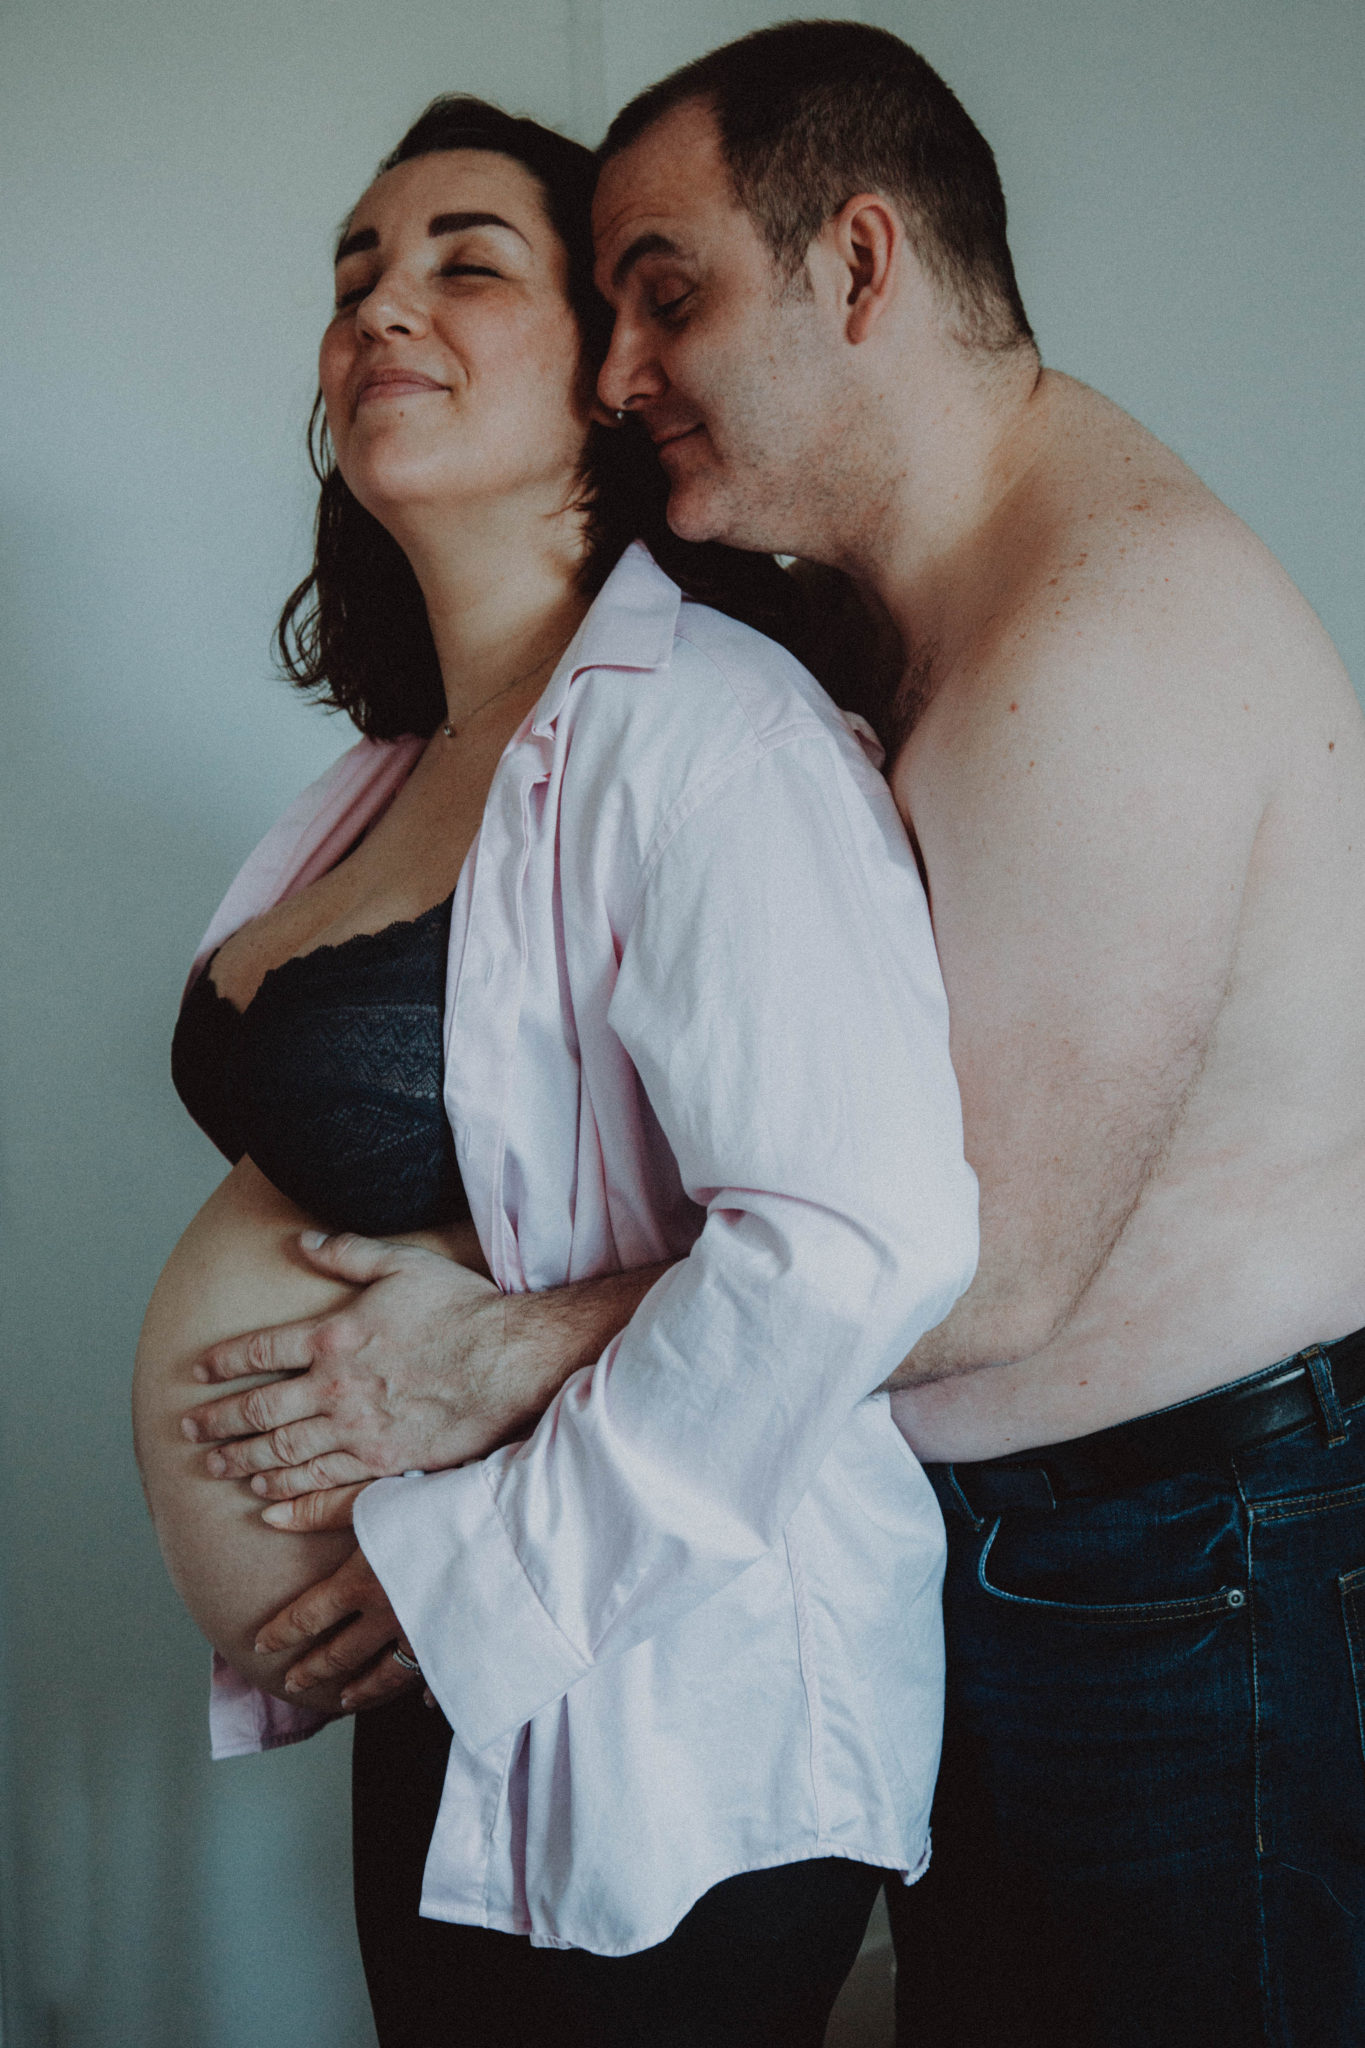 Magnifique portrait des futurs parents. La séance photos grossesse est vraiment là pour créer ce genre de souvenirs.